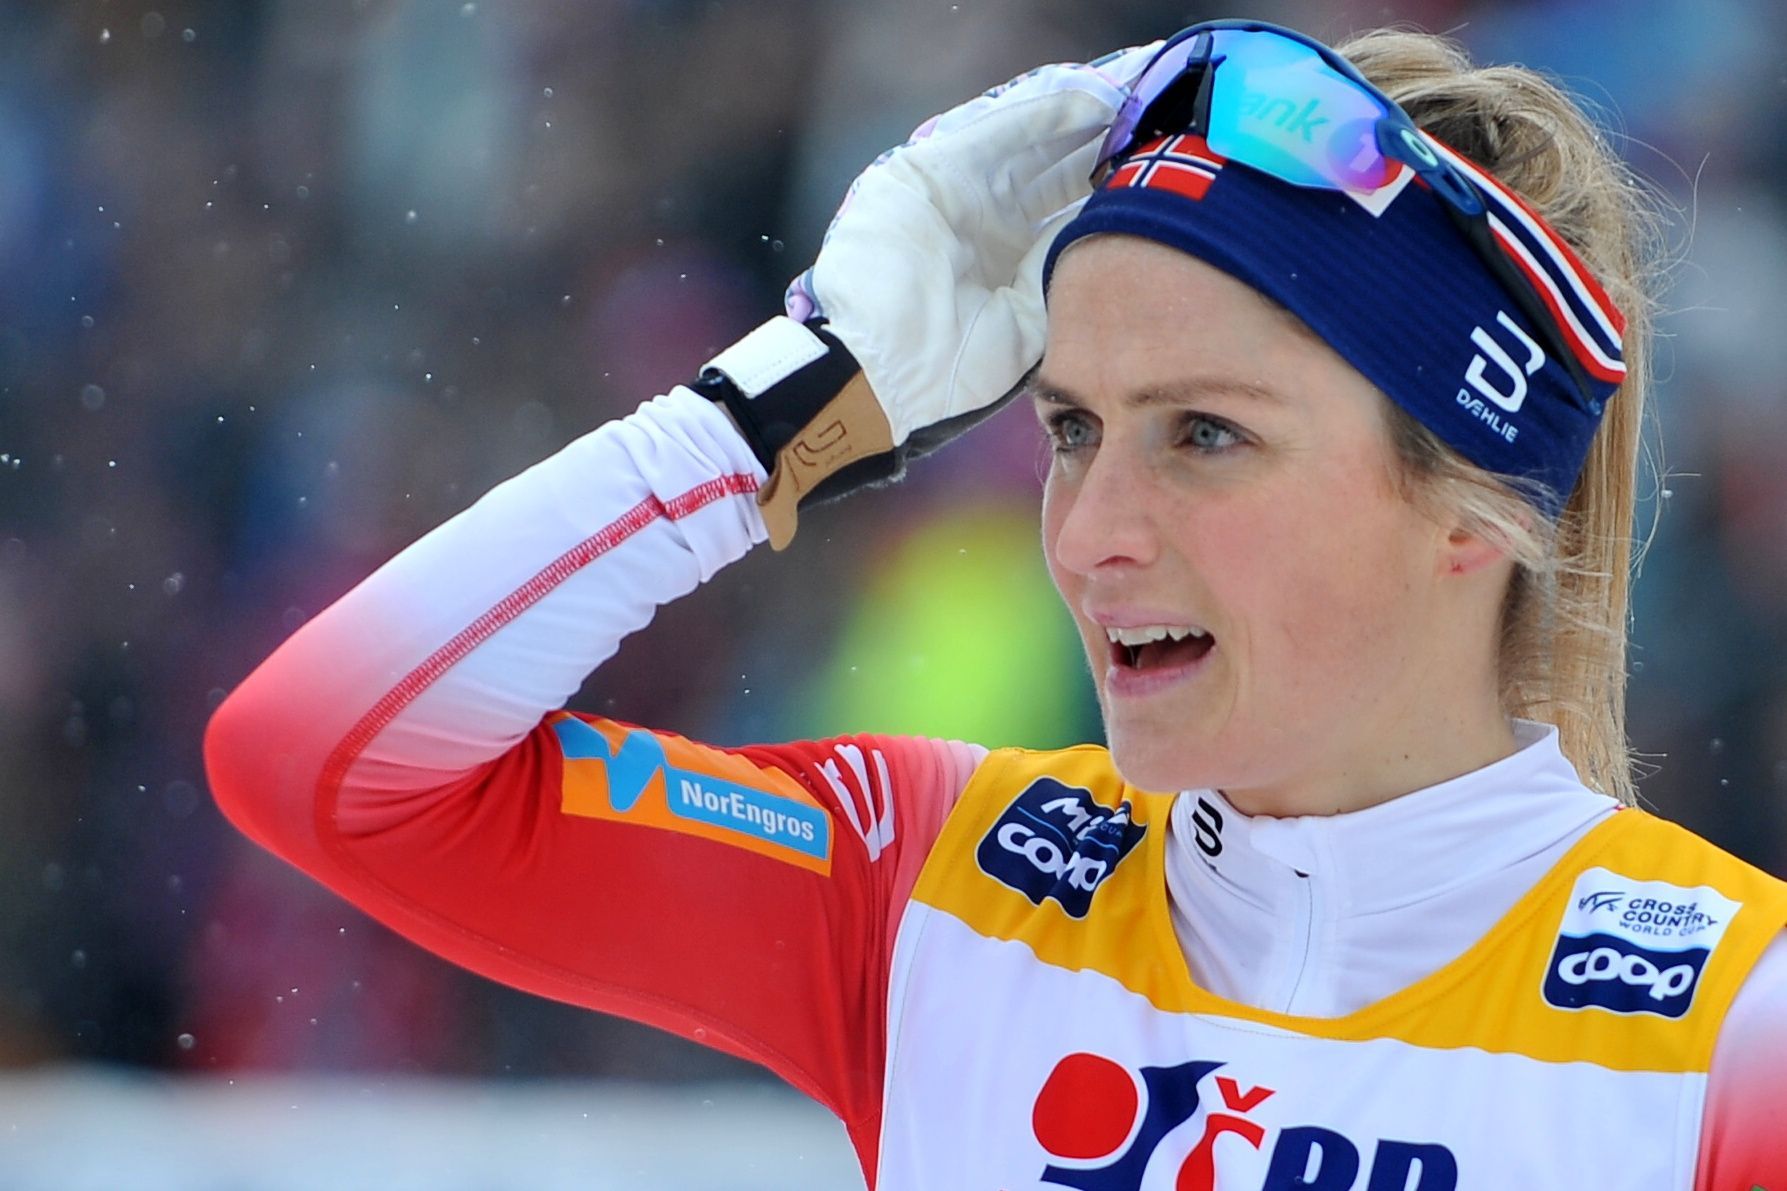 SP v běhu na lyžích NMnM (2020), stíhačka žen: Therese Johaugová